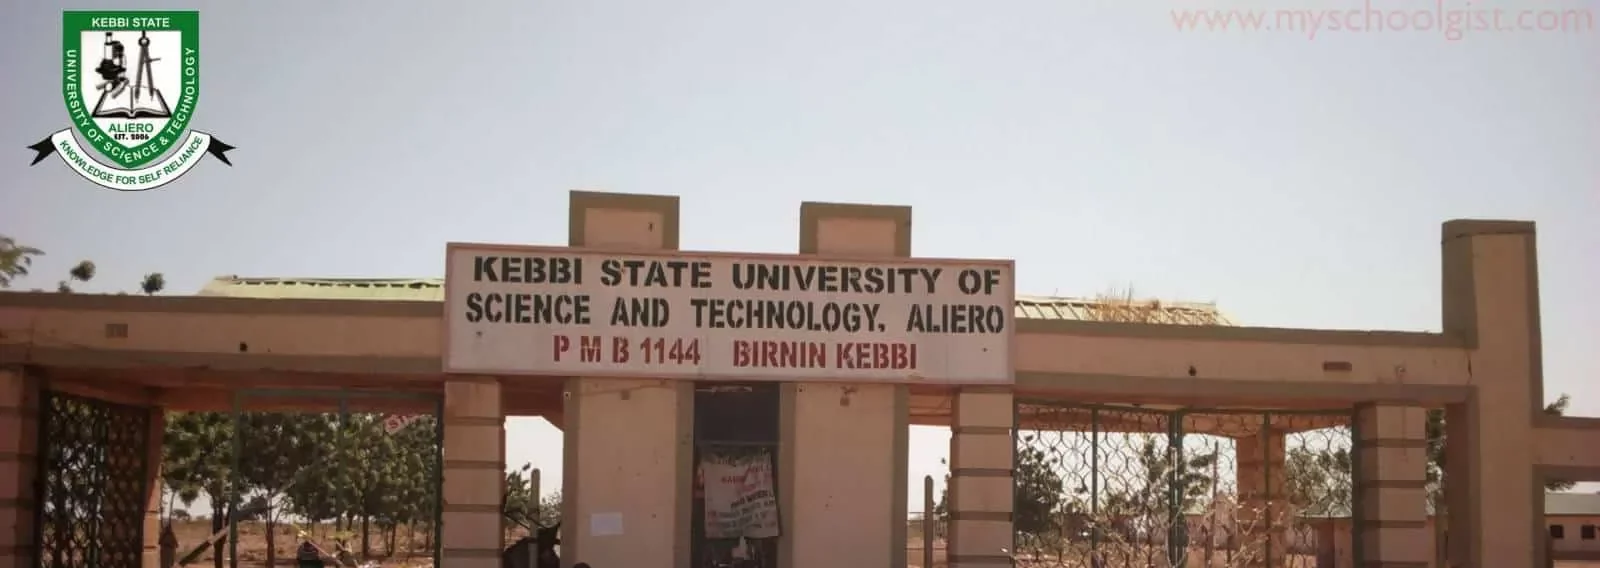 Kebbi-State-University-of-Scienc